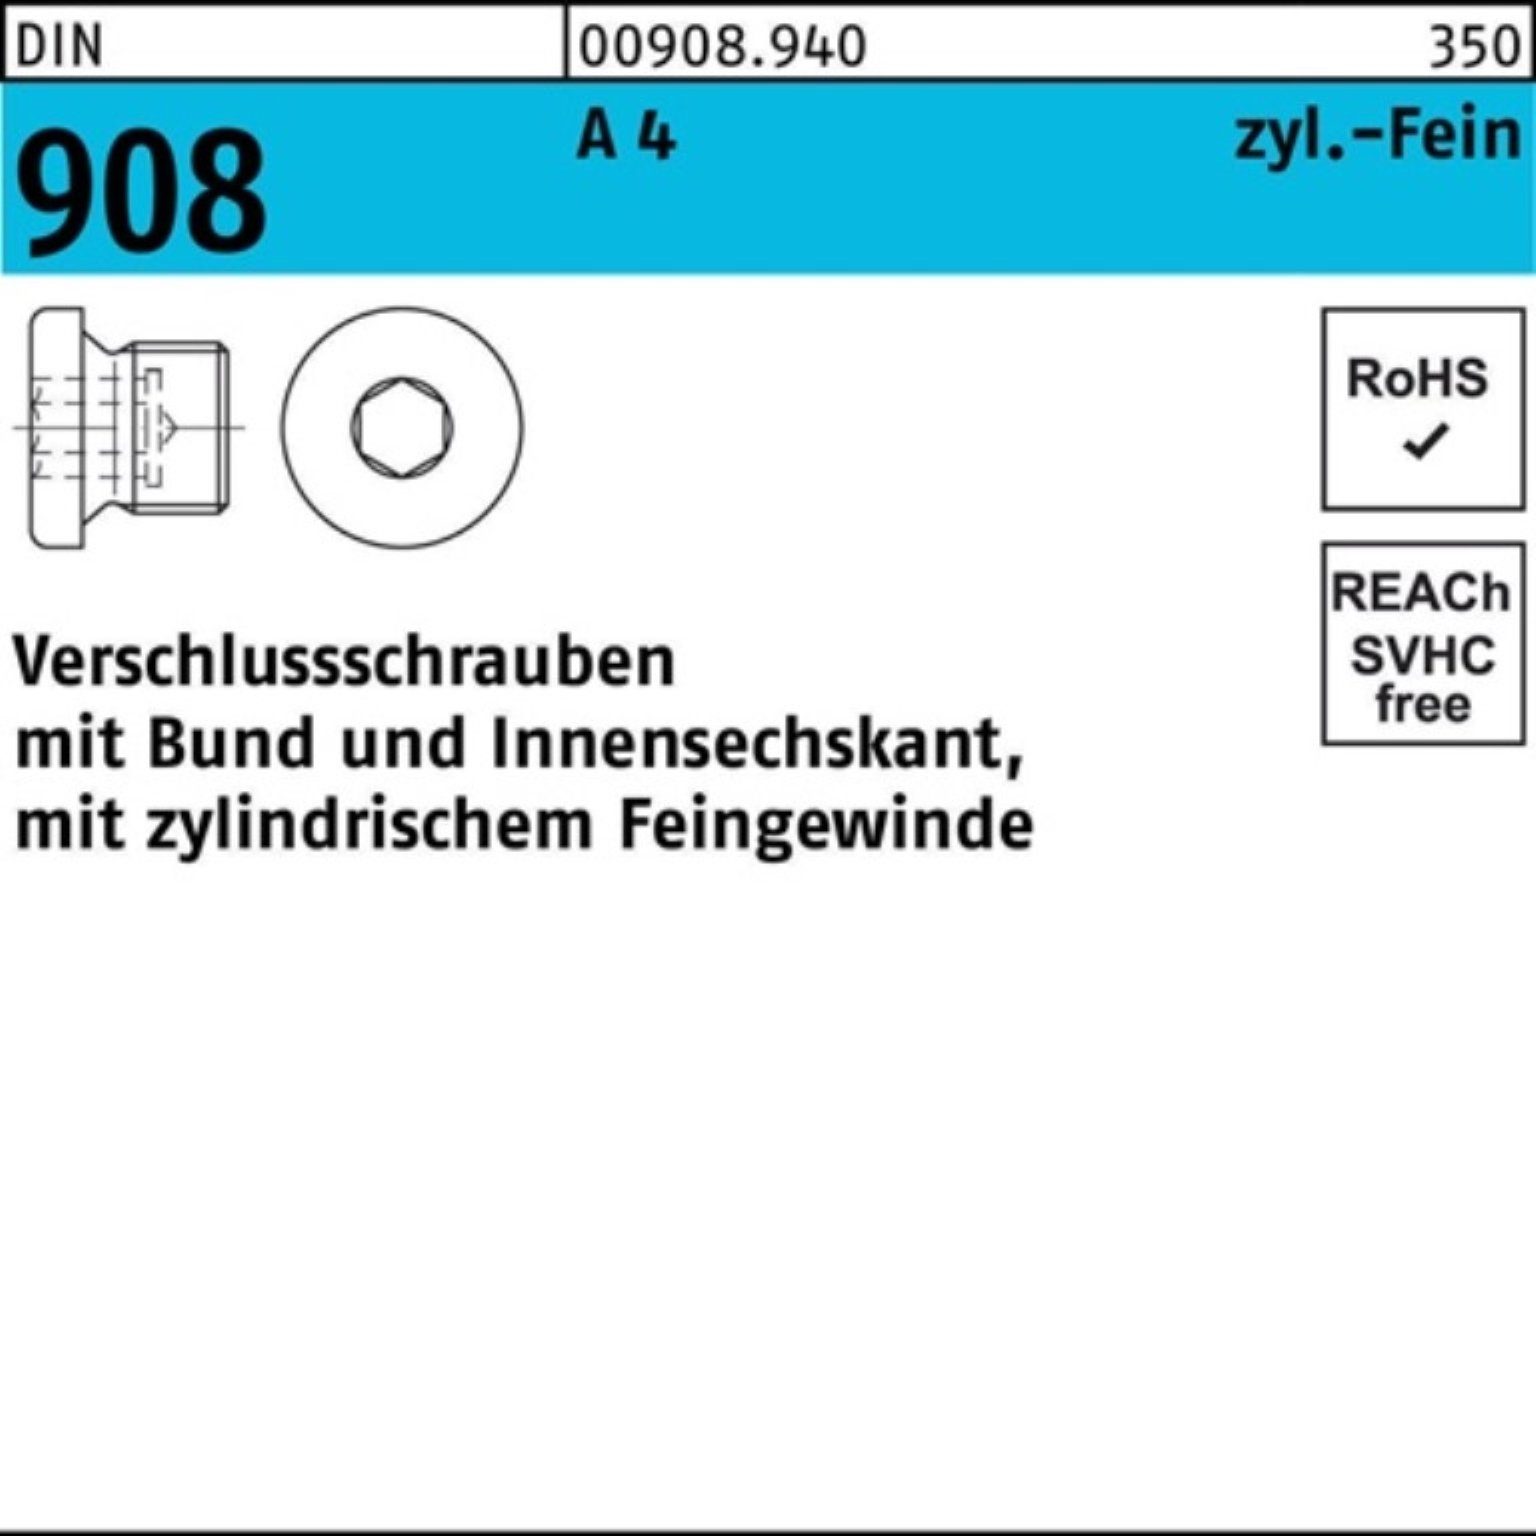 DIN Schraube Bund/Innen-6kt Reyher A Verschlußschraube 1 908 100 M8x Pack 100er 4 St